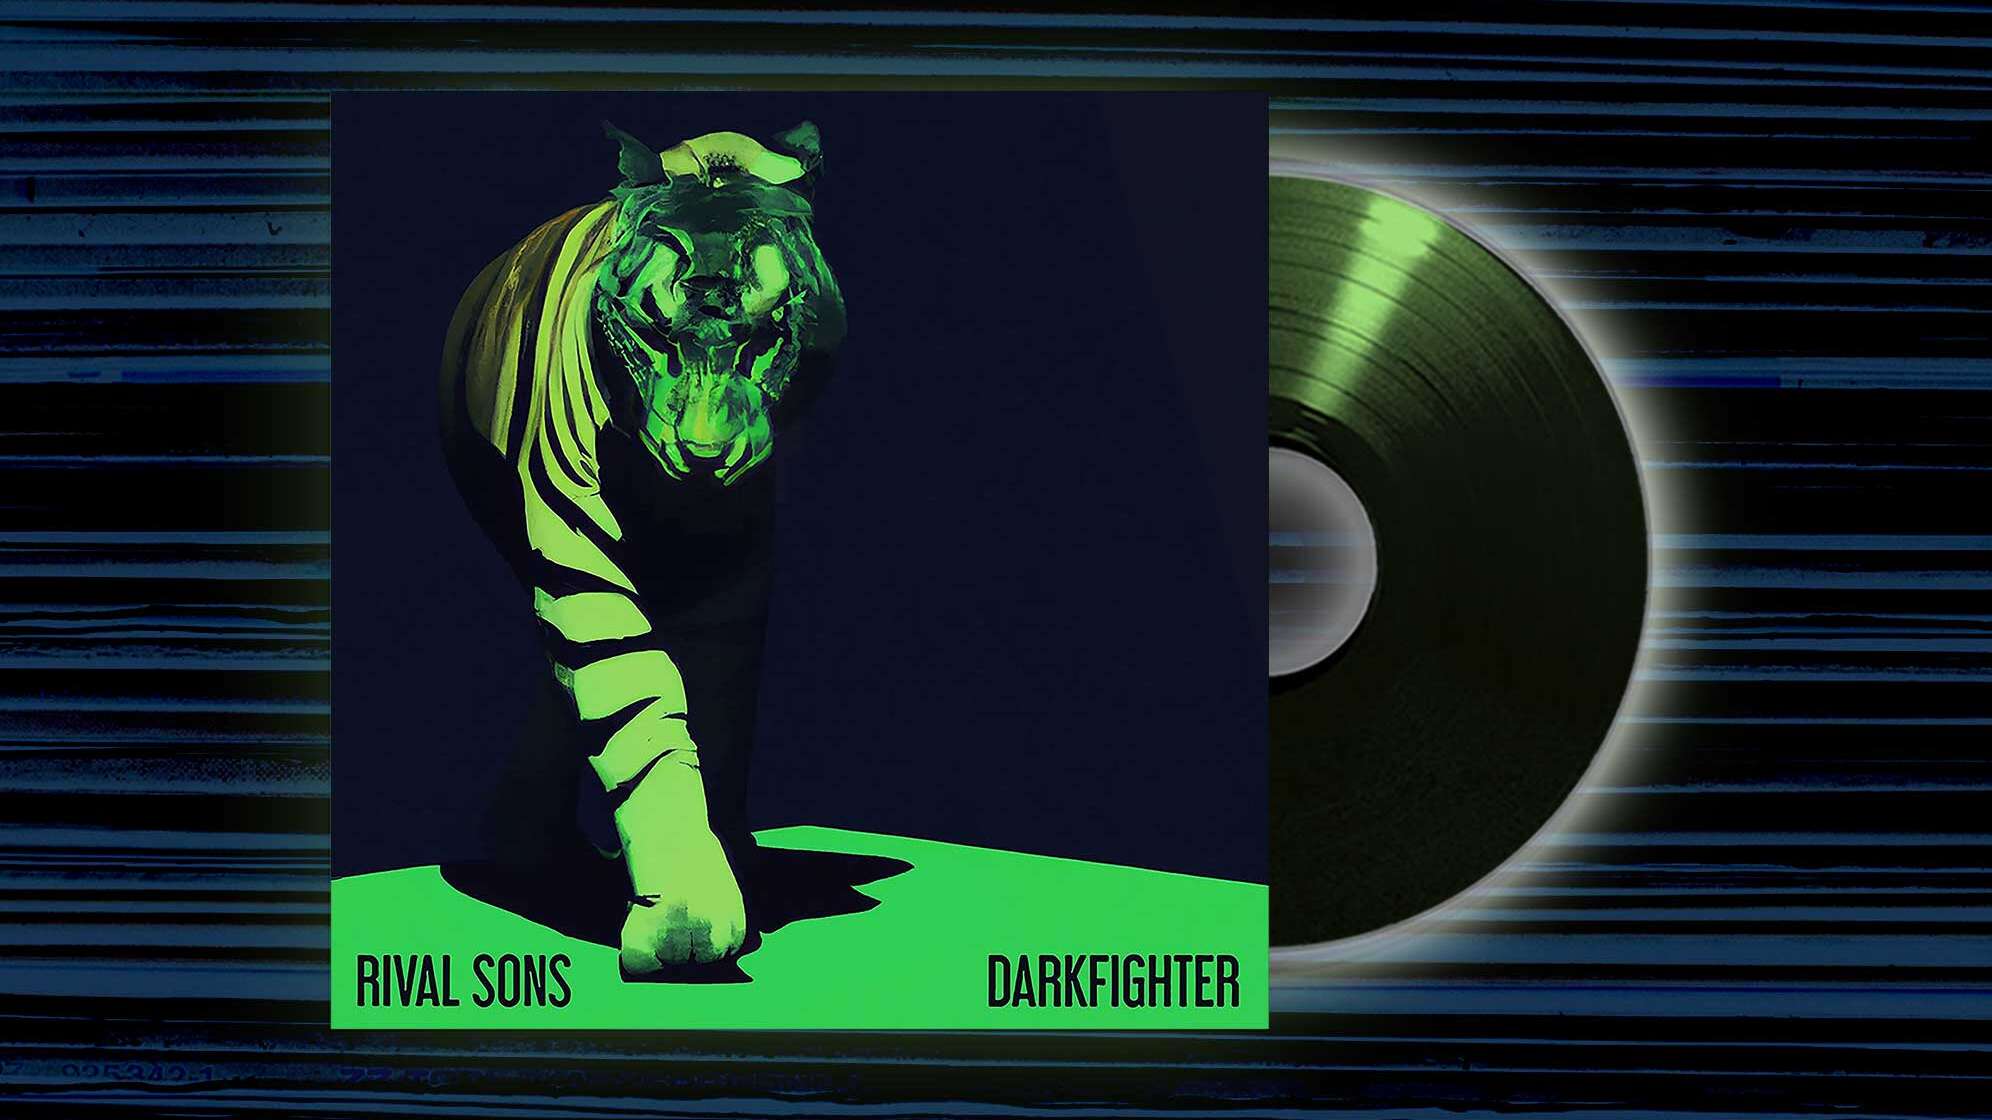 Albumcover von "Darkfighter" von Extreme mit einem Tiger, der aus dem Dunkel tritt